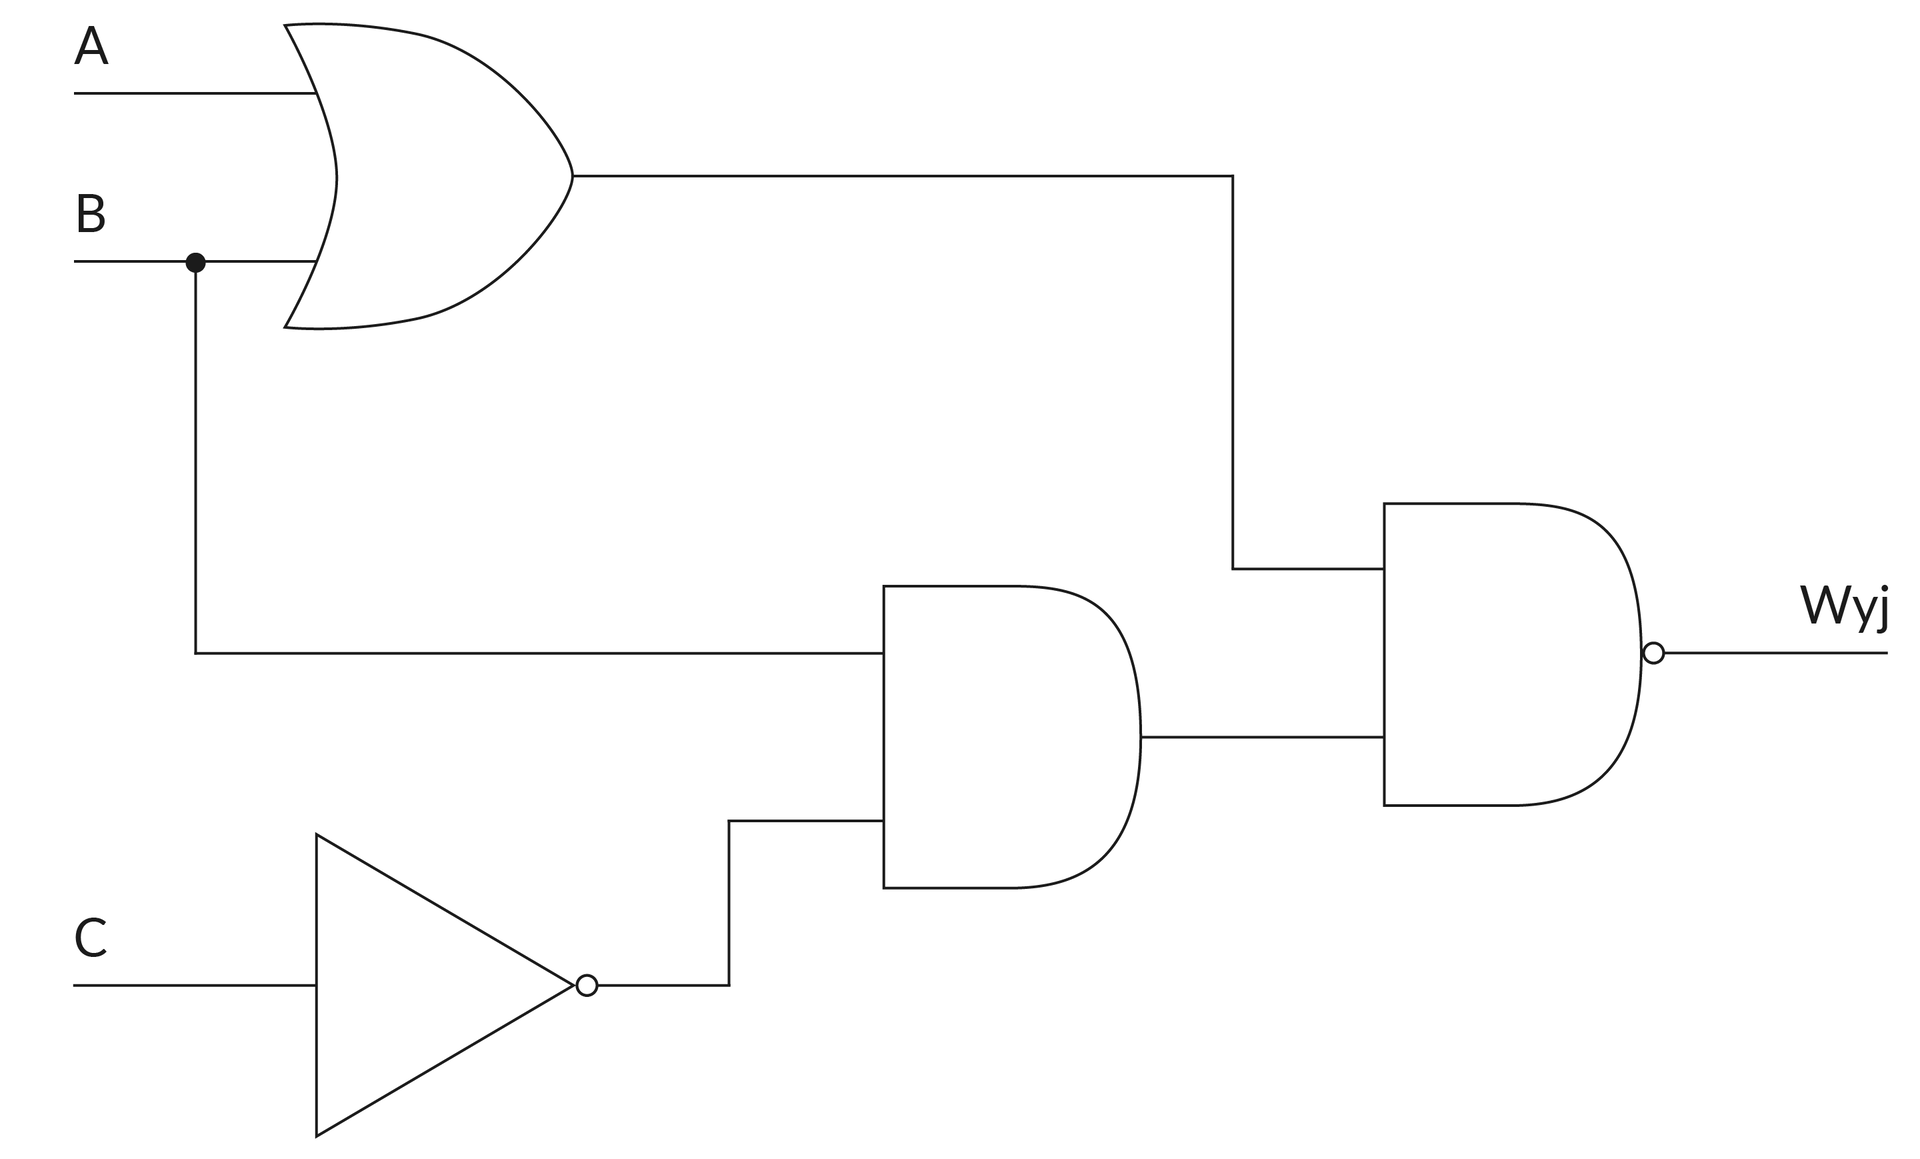 Ilustracja przedstawia układ logiczny złożony z 4 bramek - 1 AND, 1 NAND, 1 OR i 1 NOT. Pierwszą bramką, do której doprowadzone są dwa wejścia to OR, wejścia oznaczone są literami 'A' oraz 'B', wyjście tej bramki prowadzone jest do ostatniej bramki NAND. Bramka NOT przyjmuje wejście 'C', a wyjście podłącza do bramki środkowej - AND, której drugim wejściem jest 'B' poprowadzone od poczatkowej bramki OR. Wyjście bramki AND jest 2 wejściem do bramki NAND.